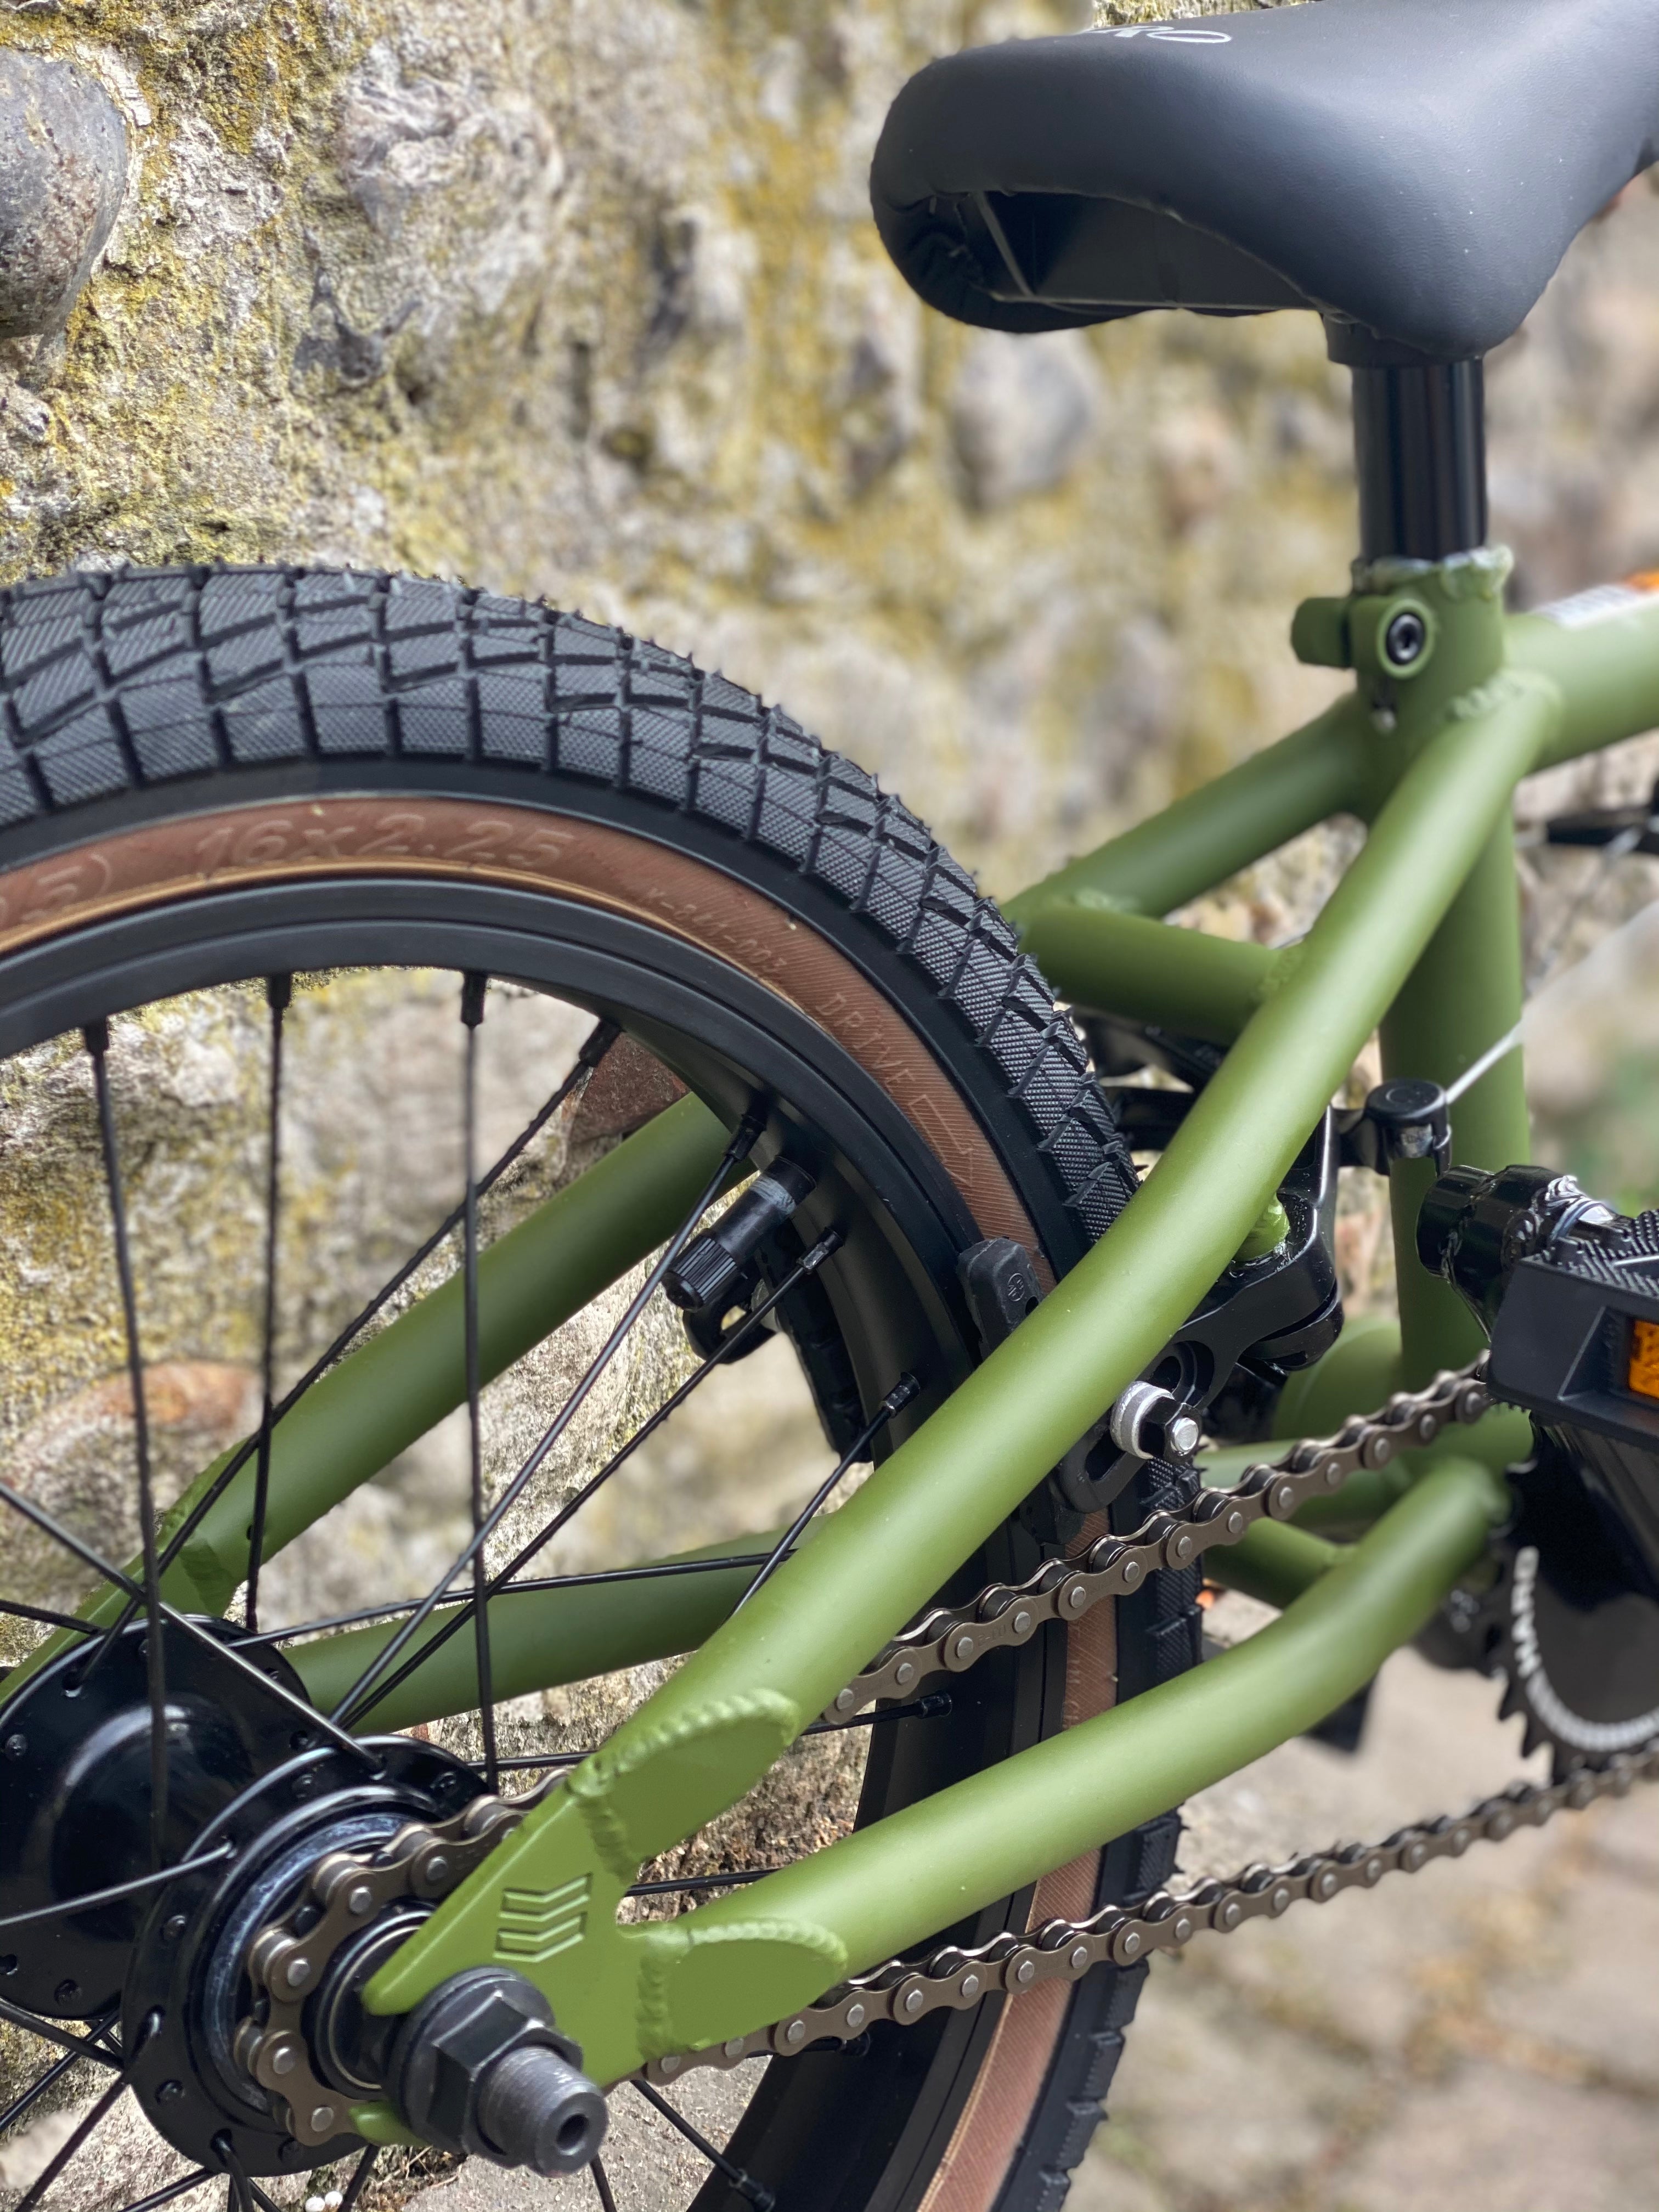 Haro Dowmtown 16” BMX complete bike